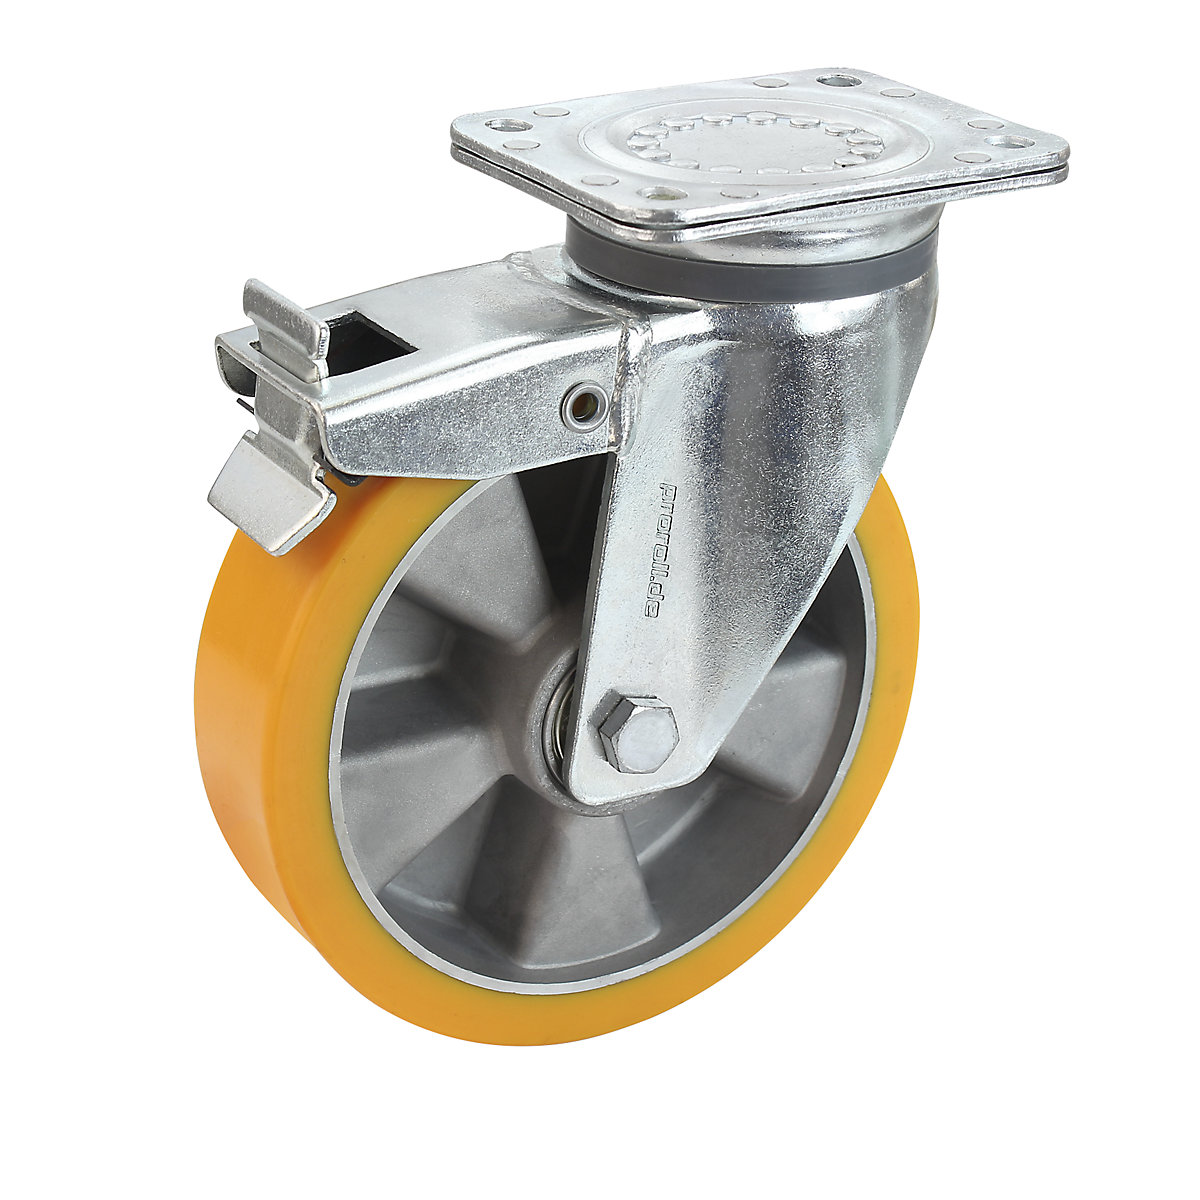 Obruč z PU na hliníkovom disku – Proroll, Ø x šírka kolesa 125 x 40 mm, otočné koliesko s dvojitou brzdou-5